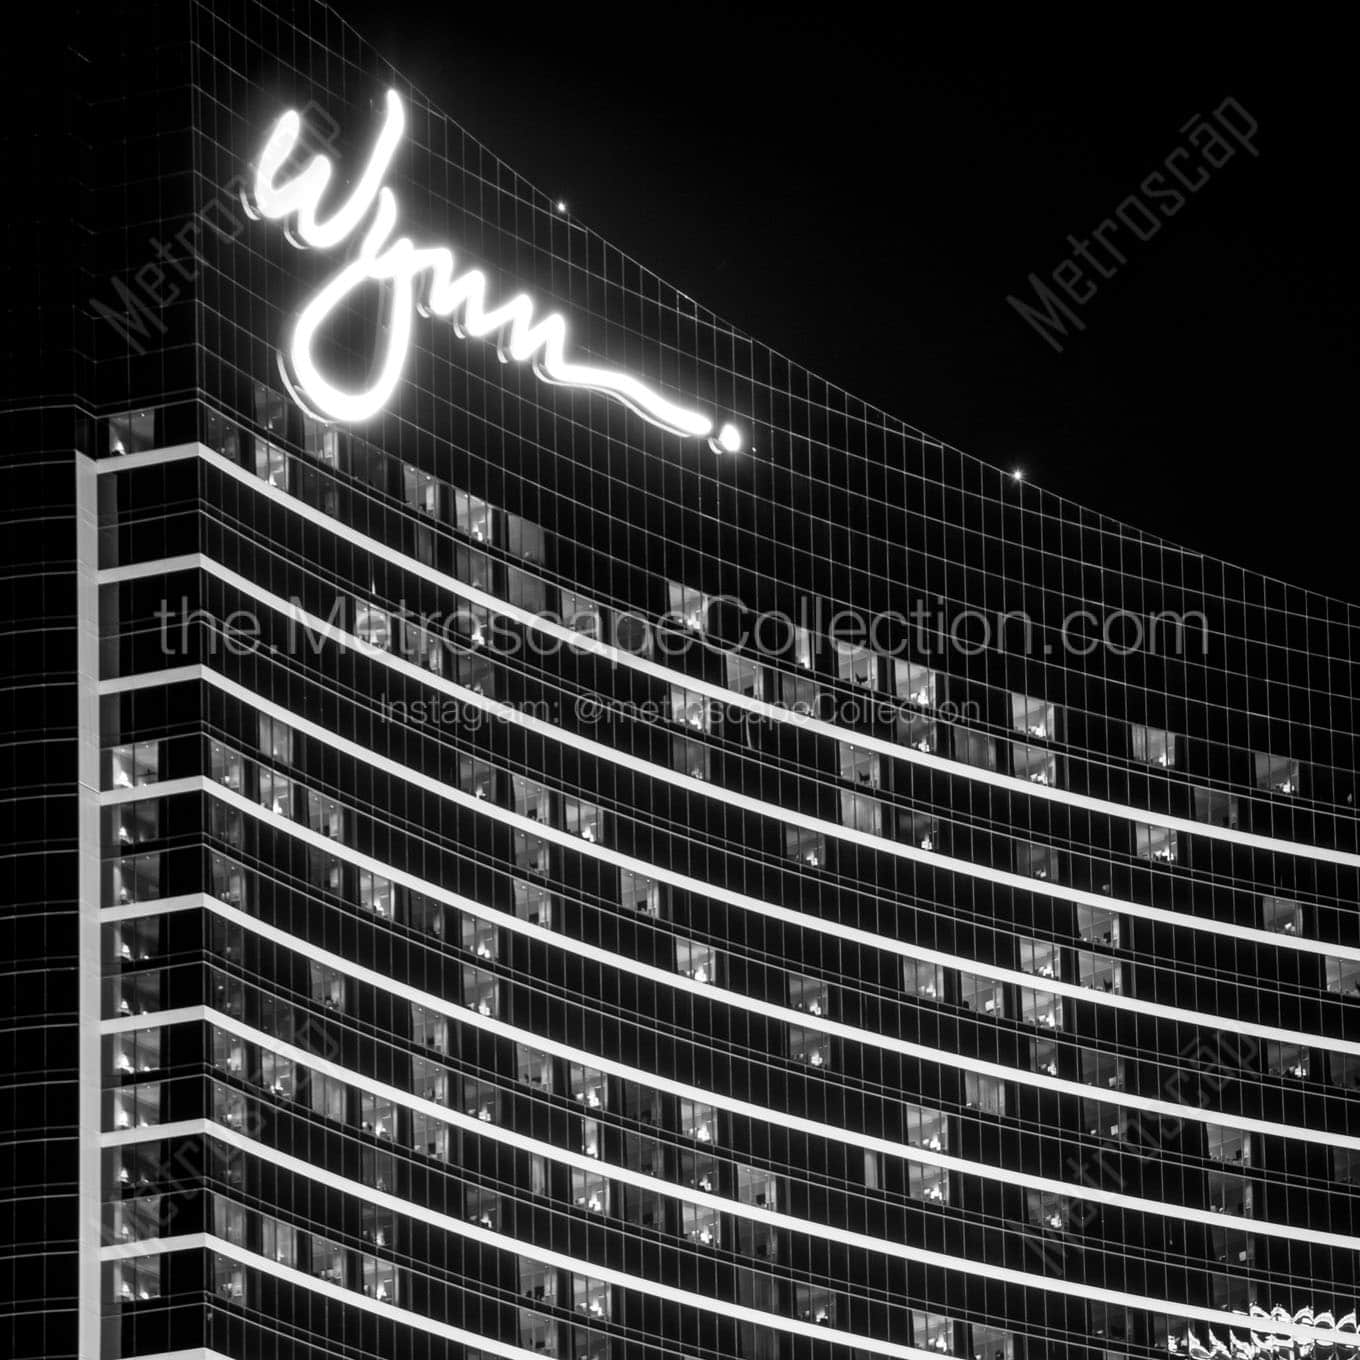 wynn hotel at night Black & White Wall Art